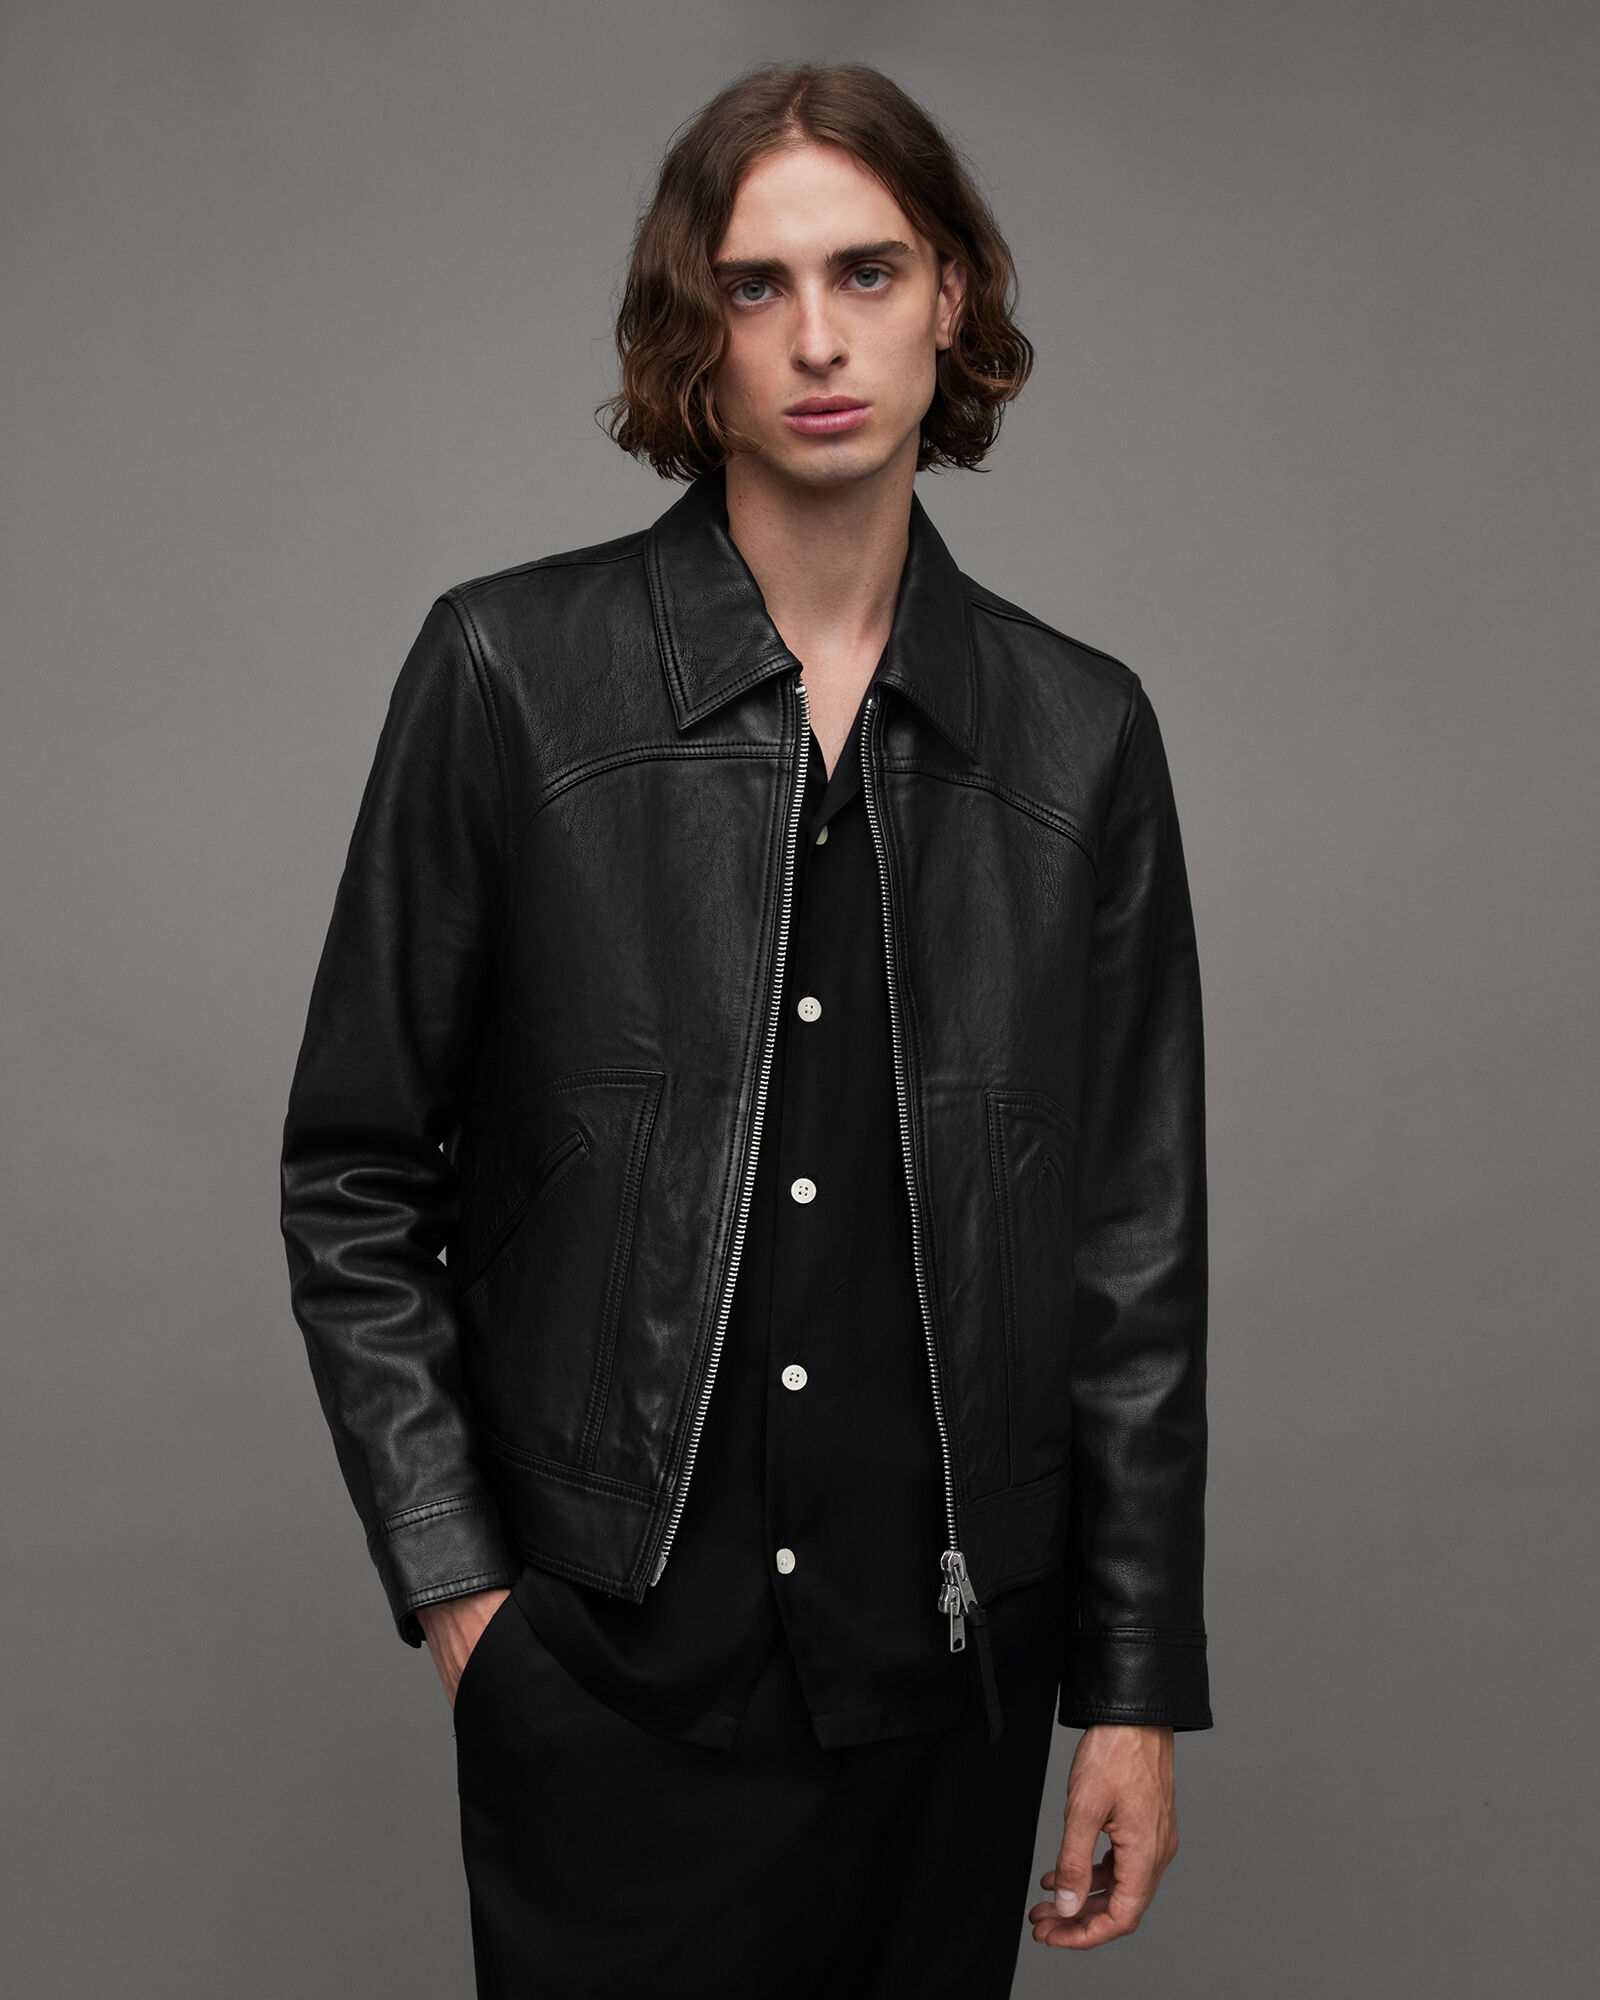 Men's Leather Jackets & Leather Coats | ALLSAINTS US